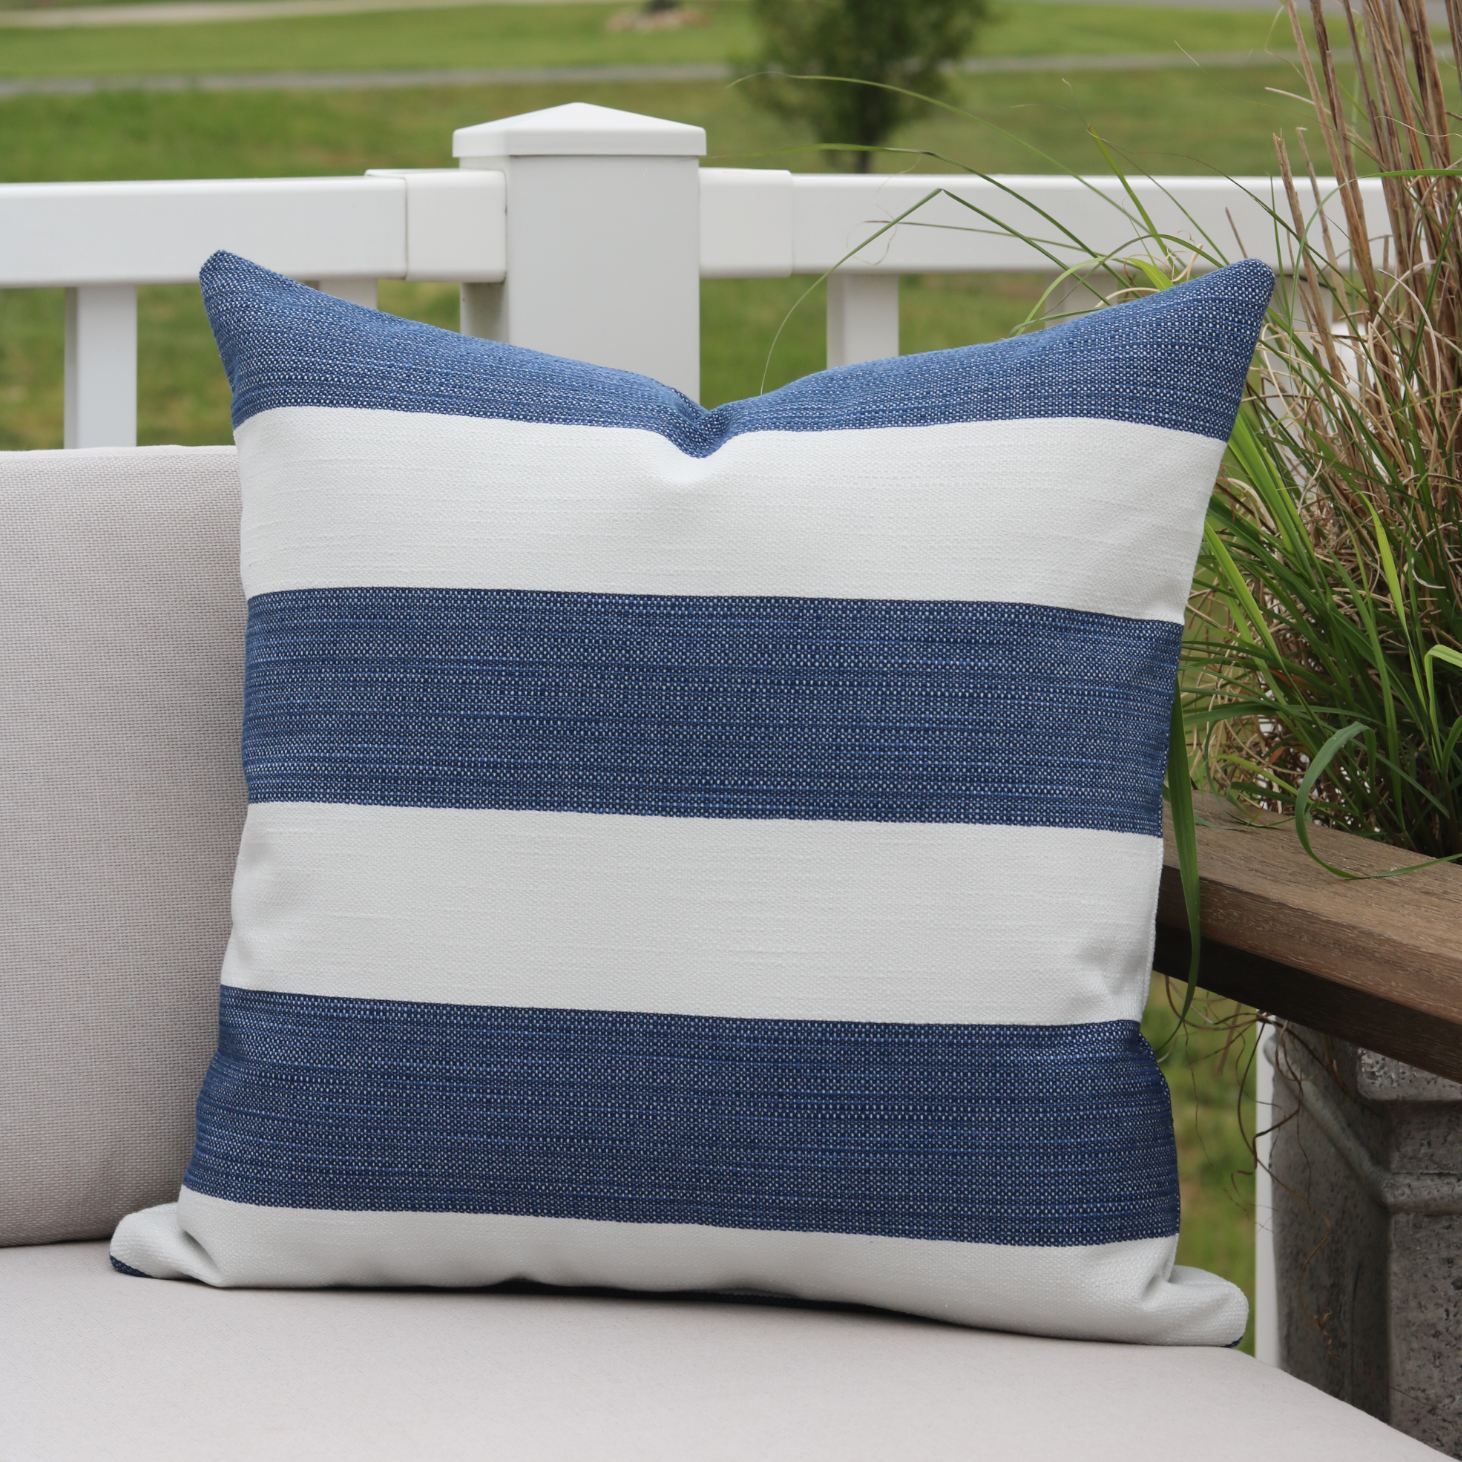 Blue Cabana Outdoor Pillow, Outdoor Pillow Cover, Outdoor Decorative Pillow,  Outdoor decor, Summer Pillows, Hackner Home, Designer Pillows, Handmade Pillows, Blue Decorative Pillows